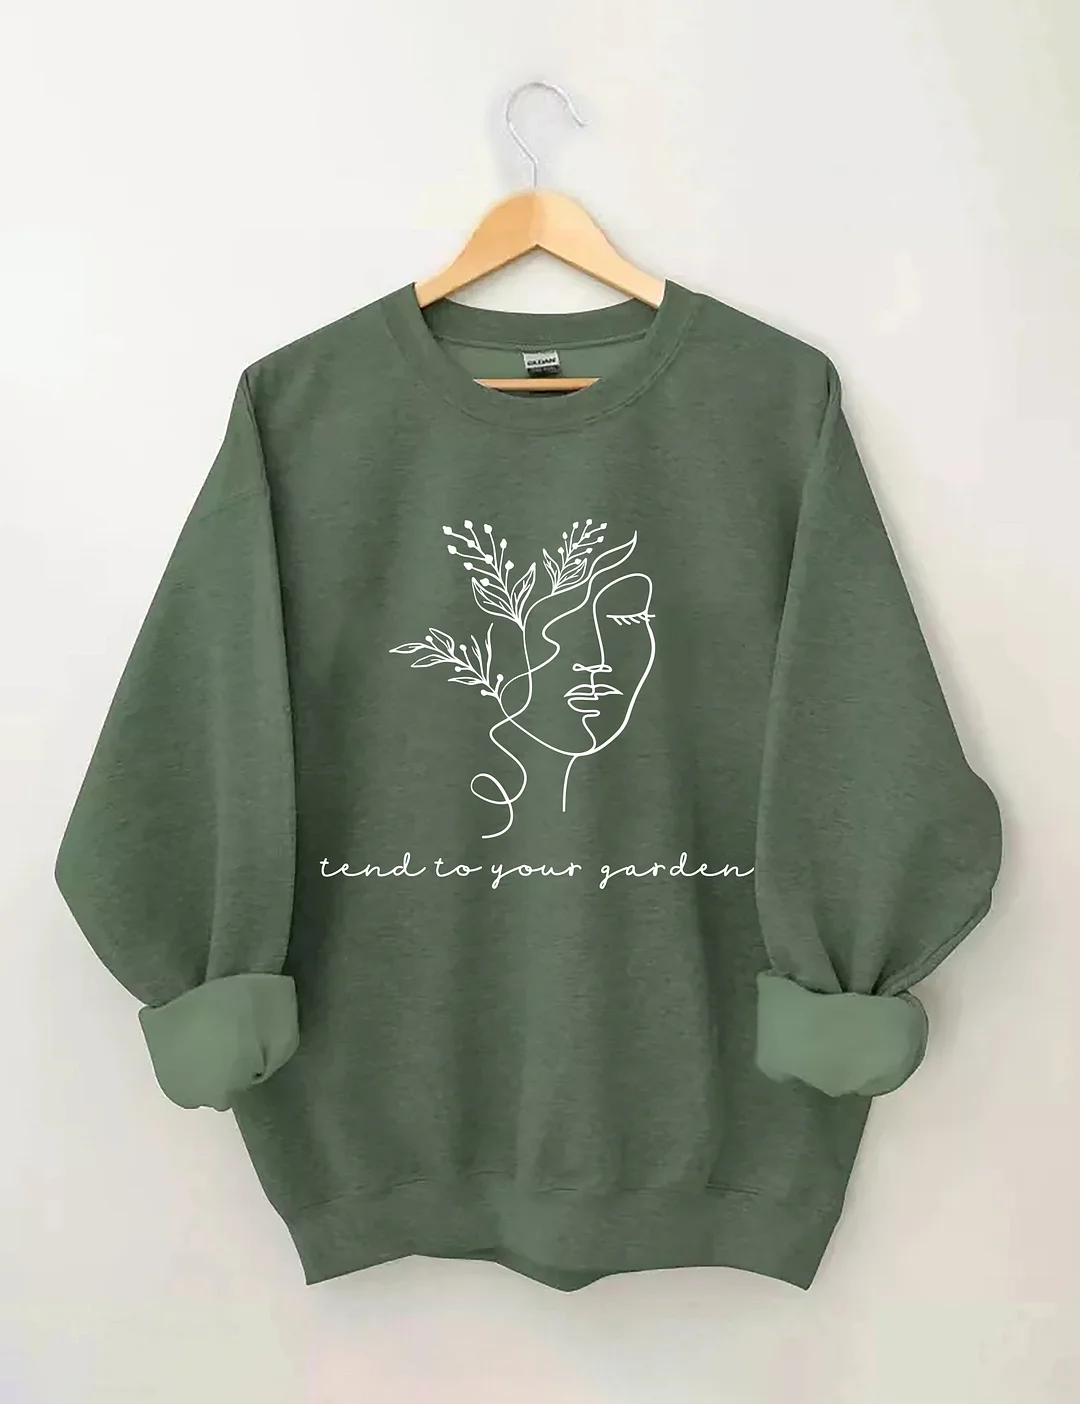 Tend To Your Garden Sweatshirt